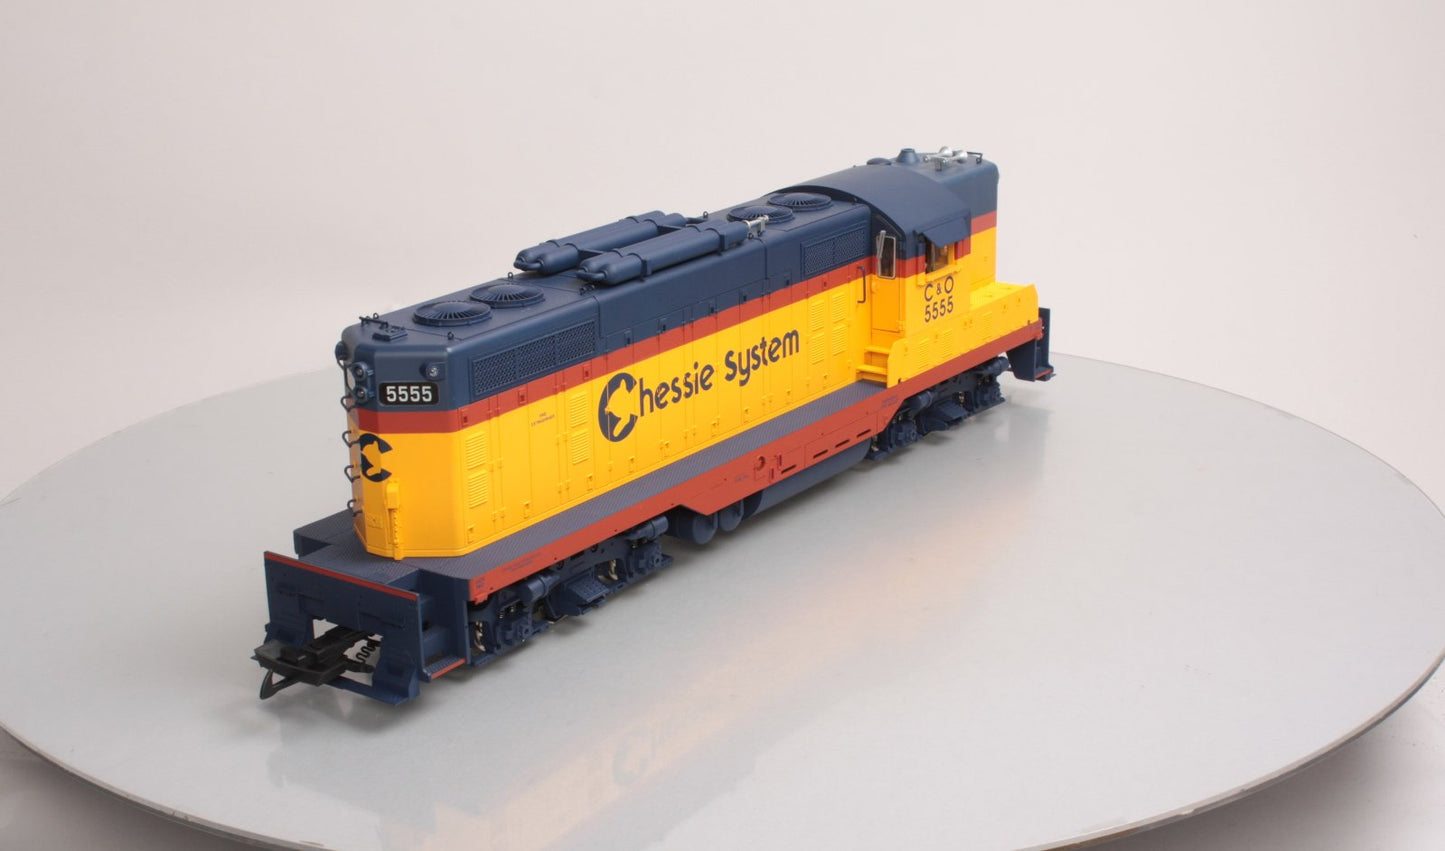 USA Trains R22105 G Chessie System EMD GP7 Diesel Locomotive